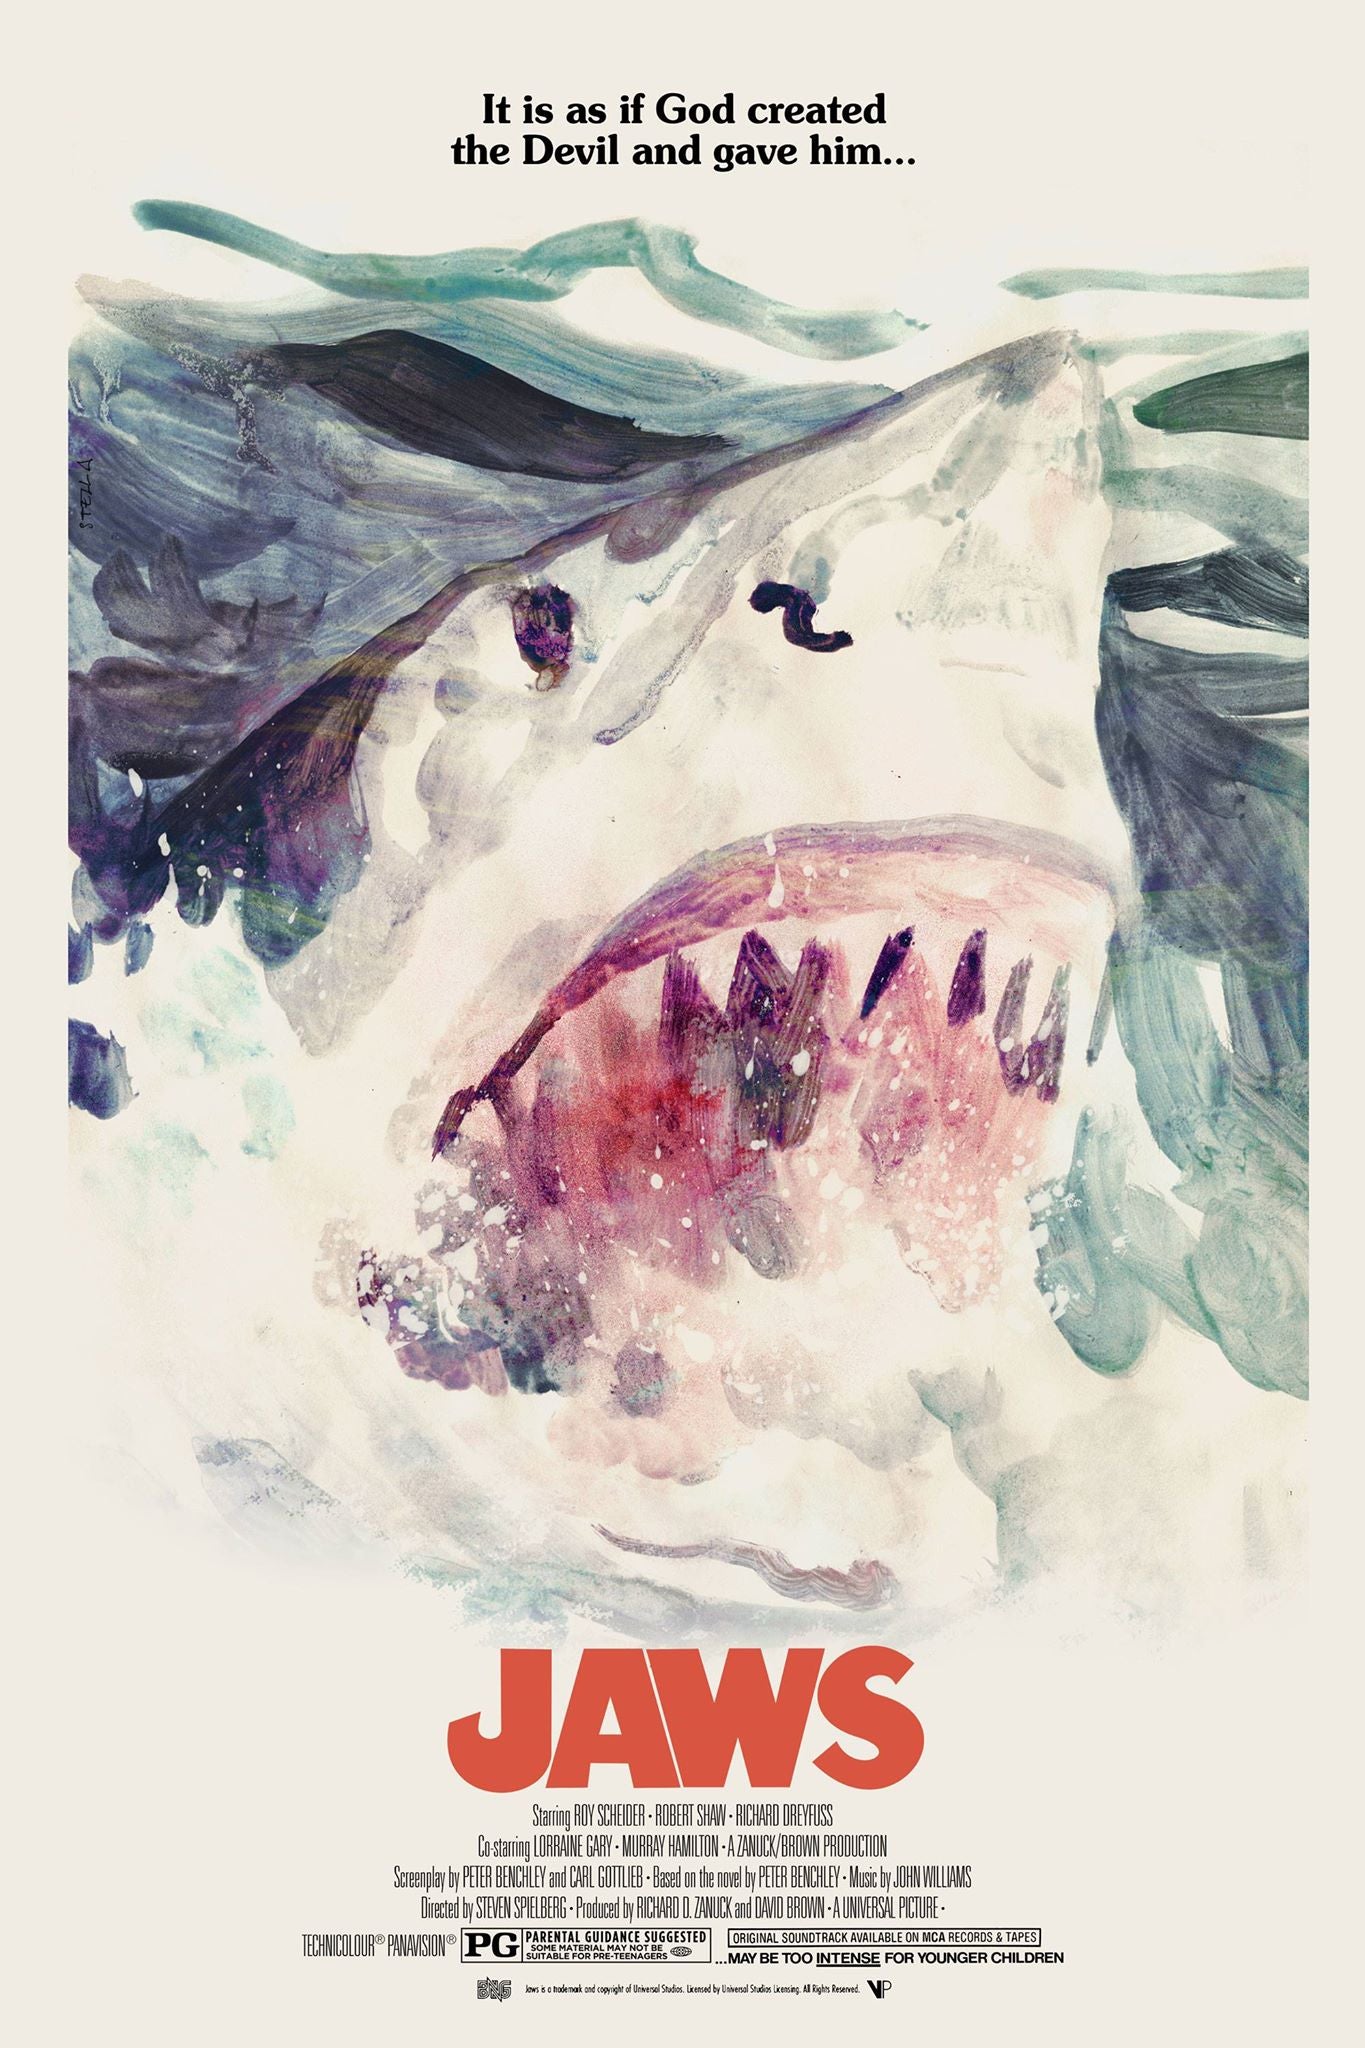 Tony Stella "JAWS" Variant